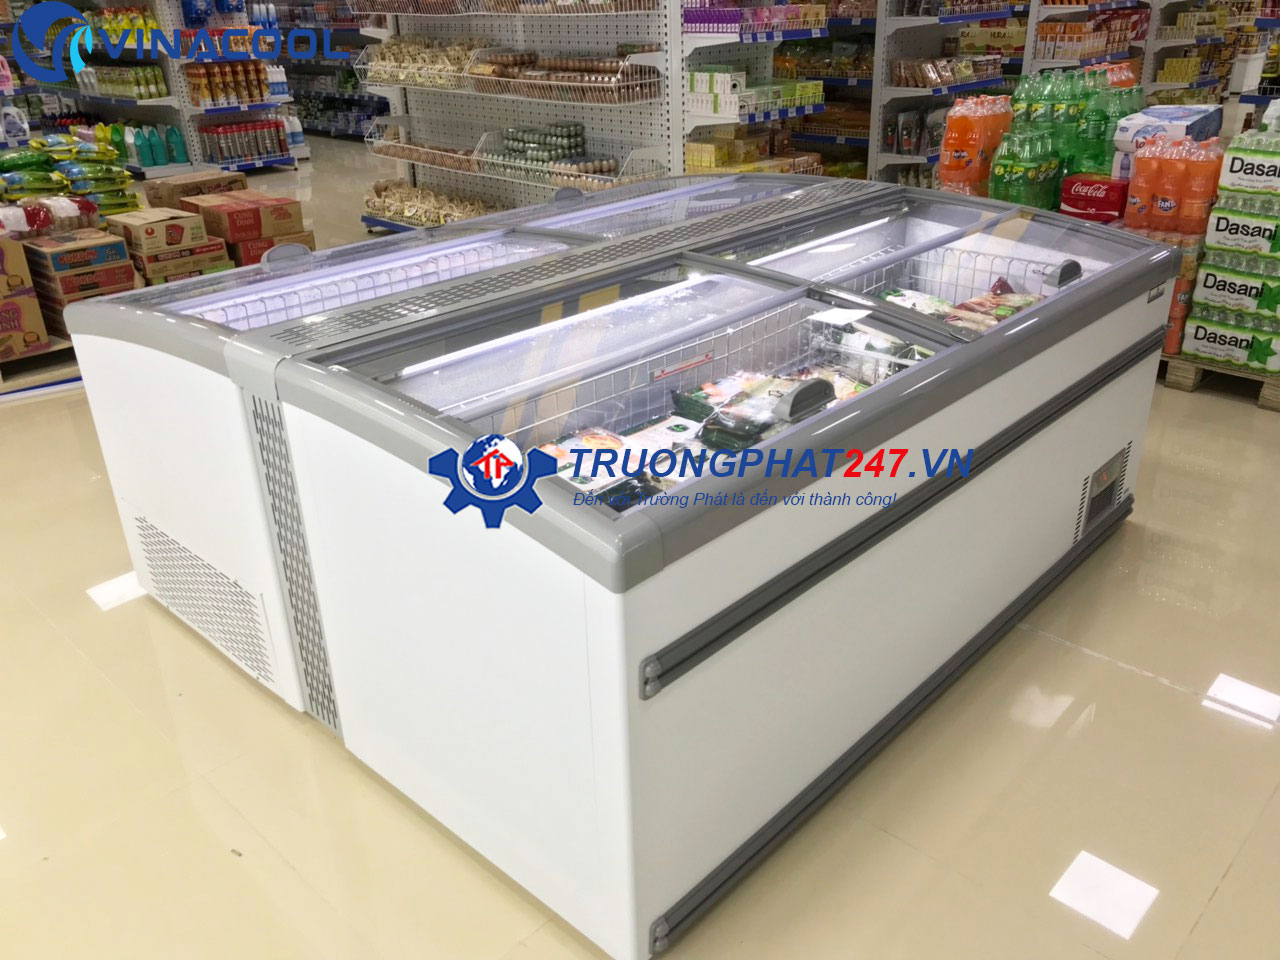 Top cửa hàng bán tủ đông giá rẻ chất lượng tại Quận Gò Vấp, TP.HCM